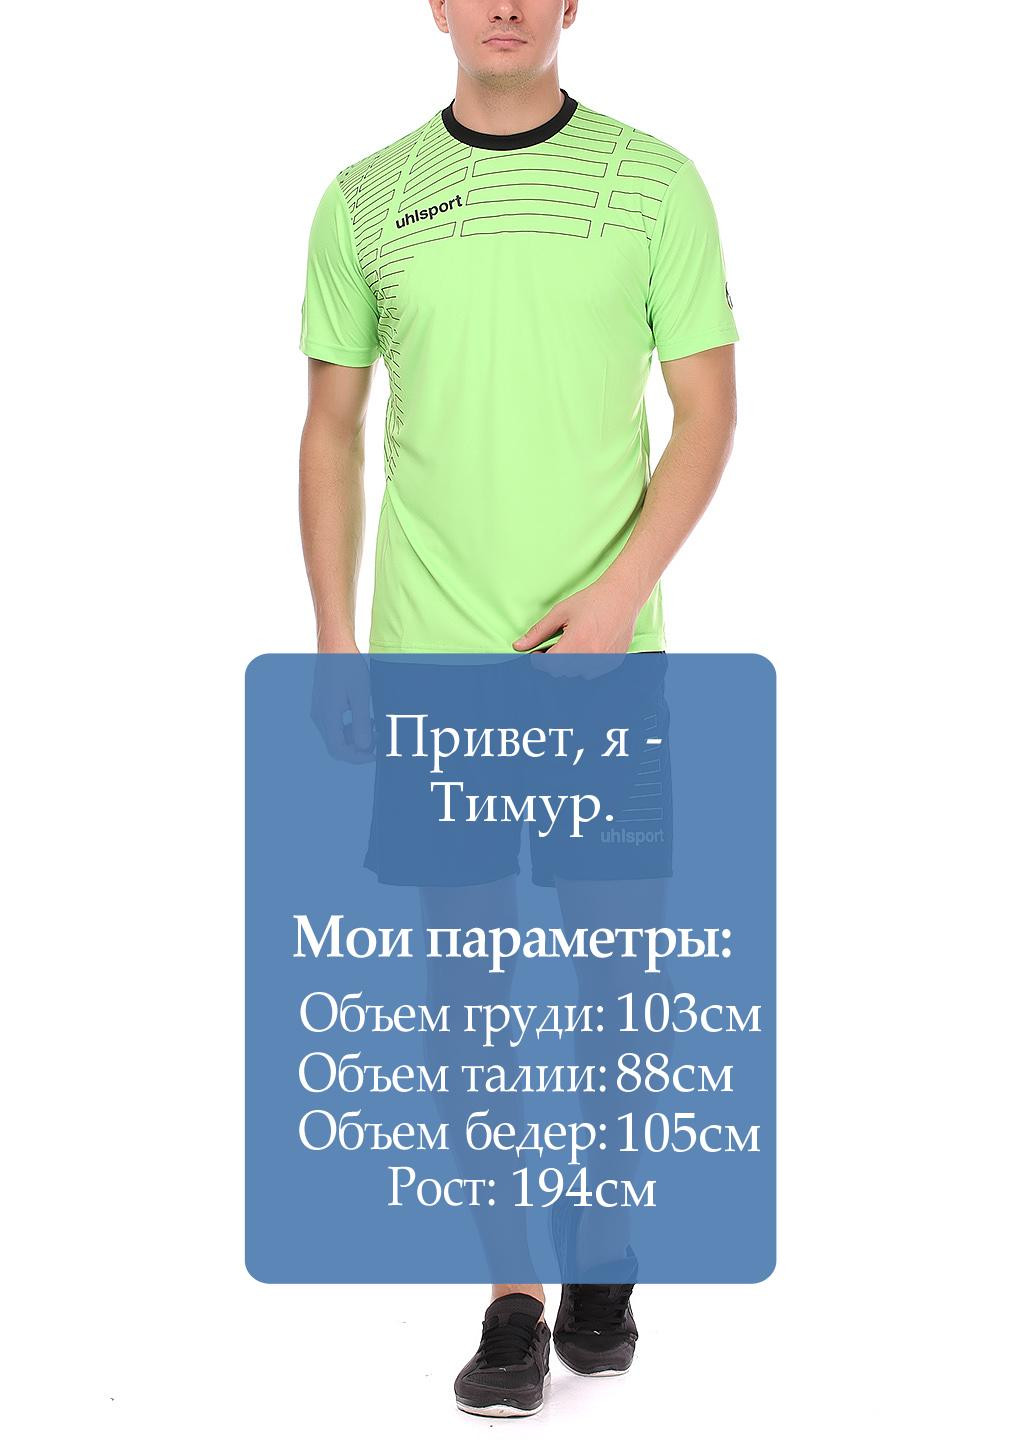 Салатовый демисезонный костюм (футболка, шорты) с коротким рукавом Uhlsport